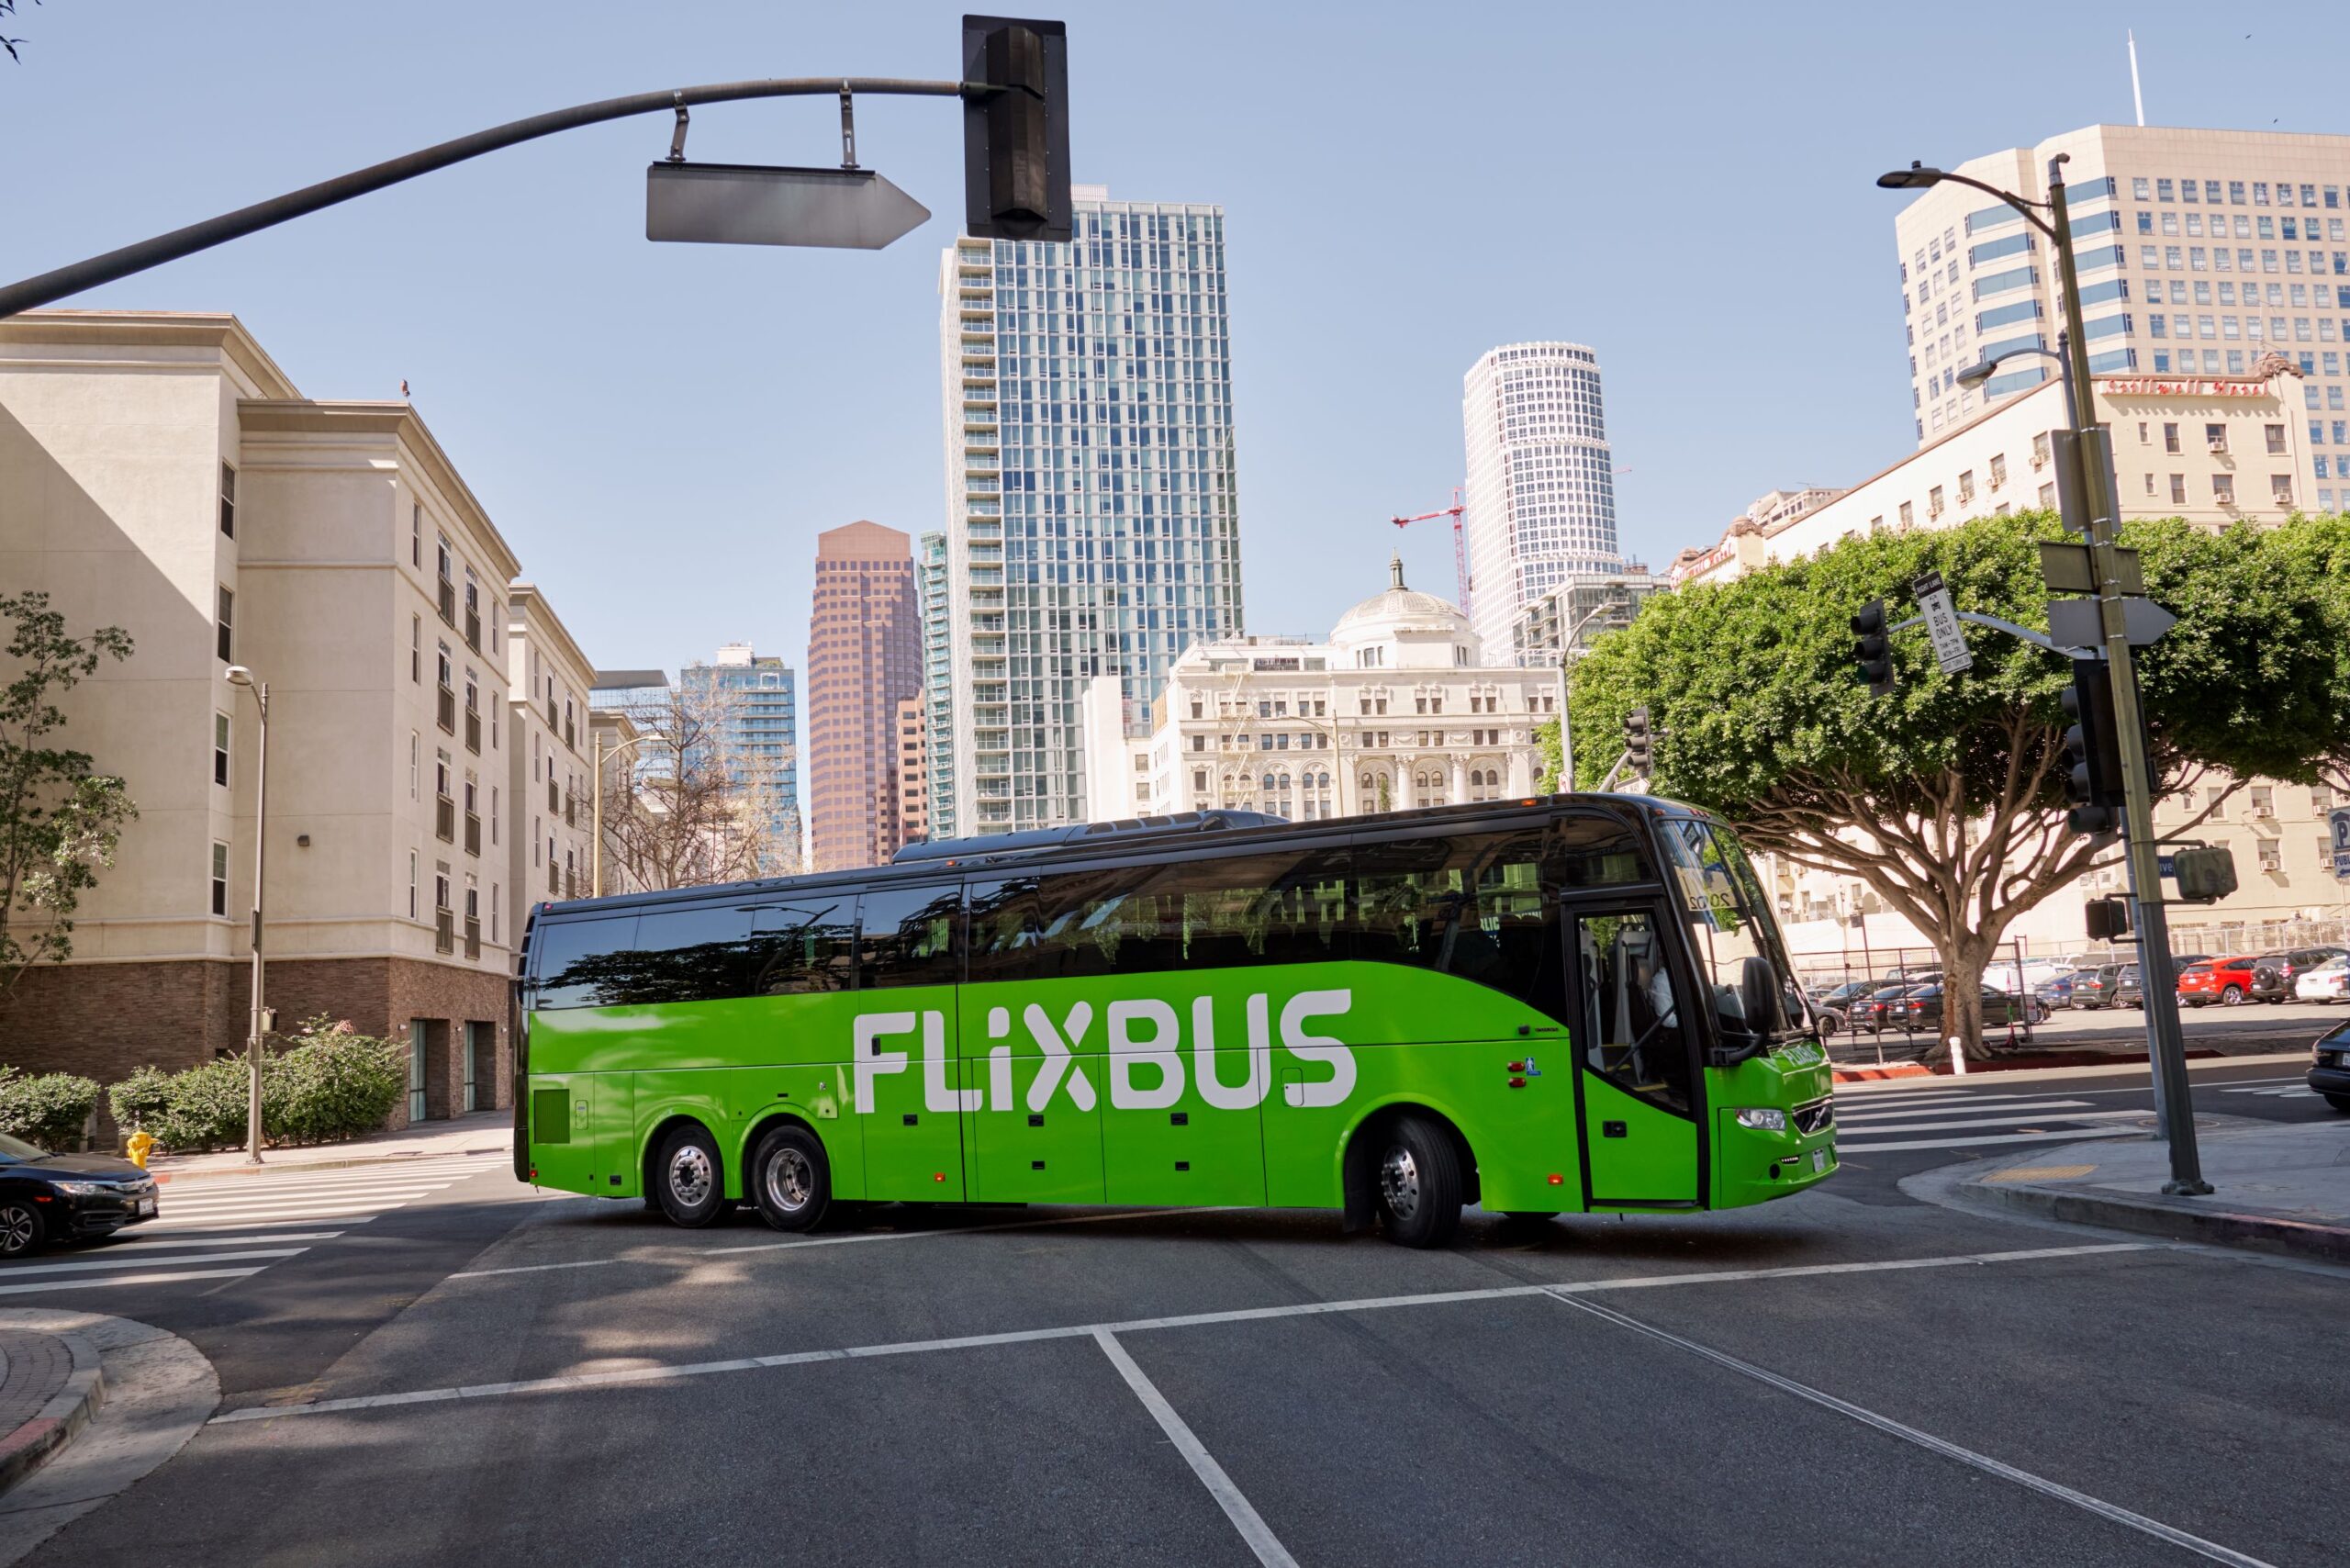 Vai viajar nesta Páscoa? FlixBus vai colocar mais autocarros na estrada nestes dias